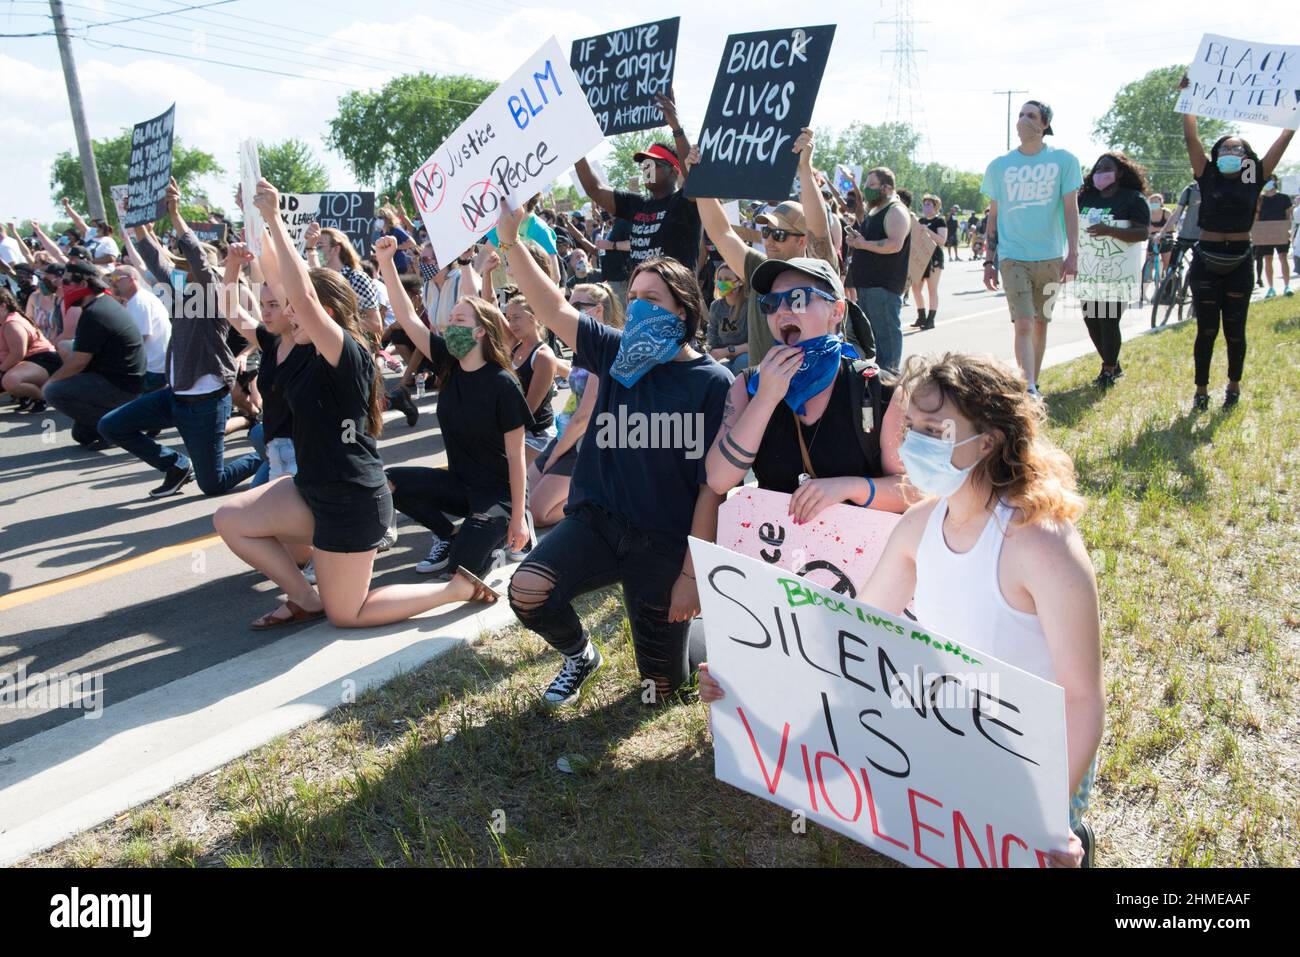 Los manifestantes de protesta se arrodillan en Hall Road en Sterling Heights, Michigan, durante la marcha de protesta Black Lives Matter. Foto de stock